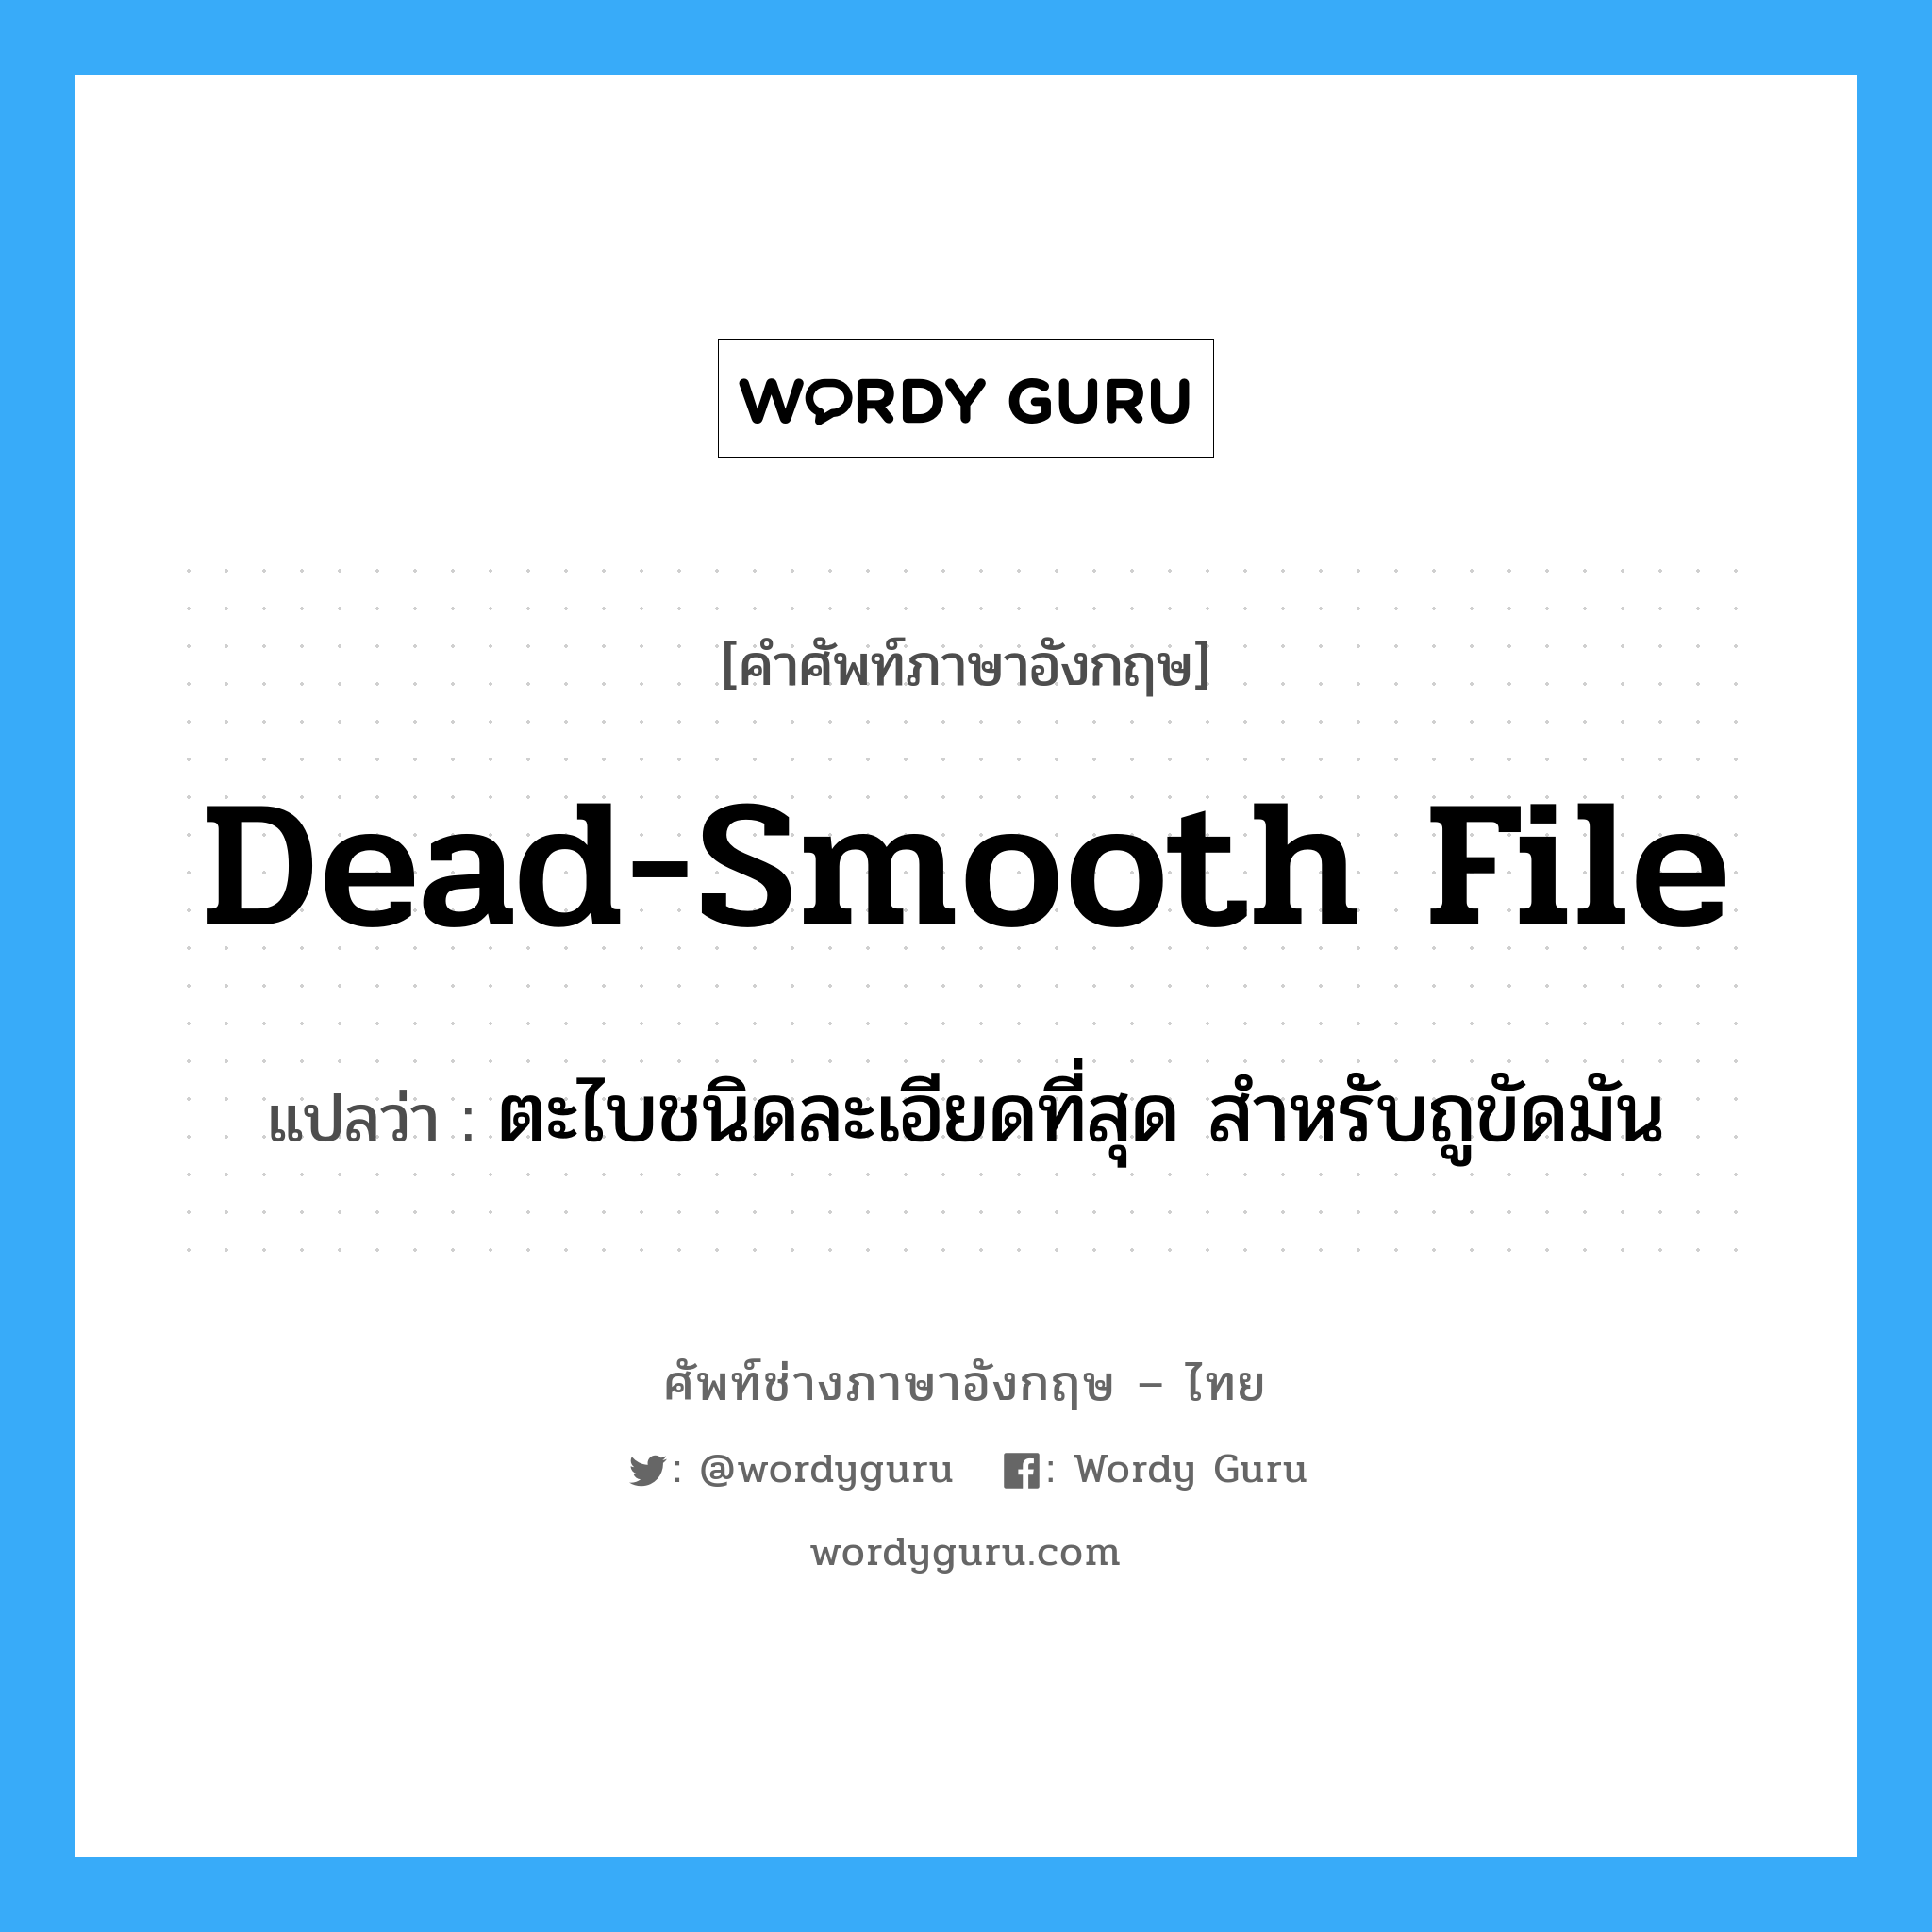 dead-smooth file แปลว่า?, คำศัพท์ช่างภาษาอังกฤษ - ไทย dead-smooth file คำศัพท์ภาษาอังกฤษ dead-smooth file แปลว่า ตะไบชนิดละเอียดที่สุด สำหรับถูขัดมัน